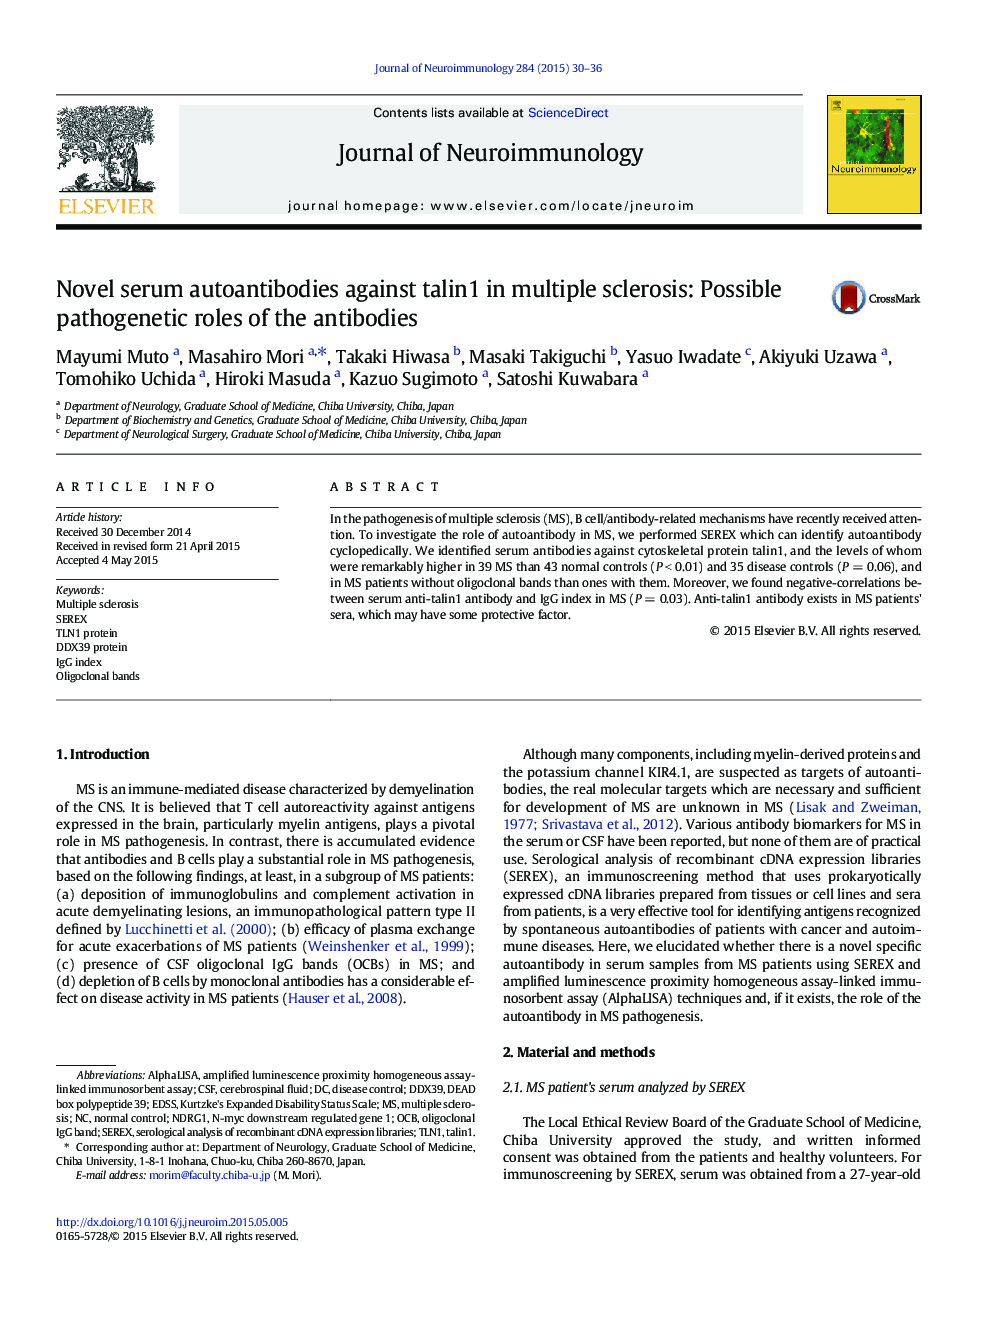 آنتیبادیهای خودکار سرم در برابر تالین 1 در مولتیپل اسکلروزیس: نقش احتمال پاتوژنیک آنتی بادیها 